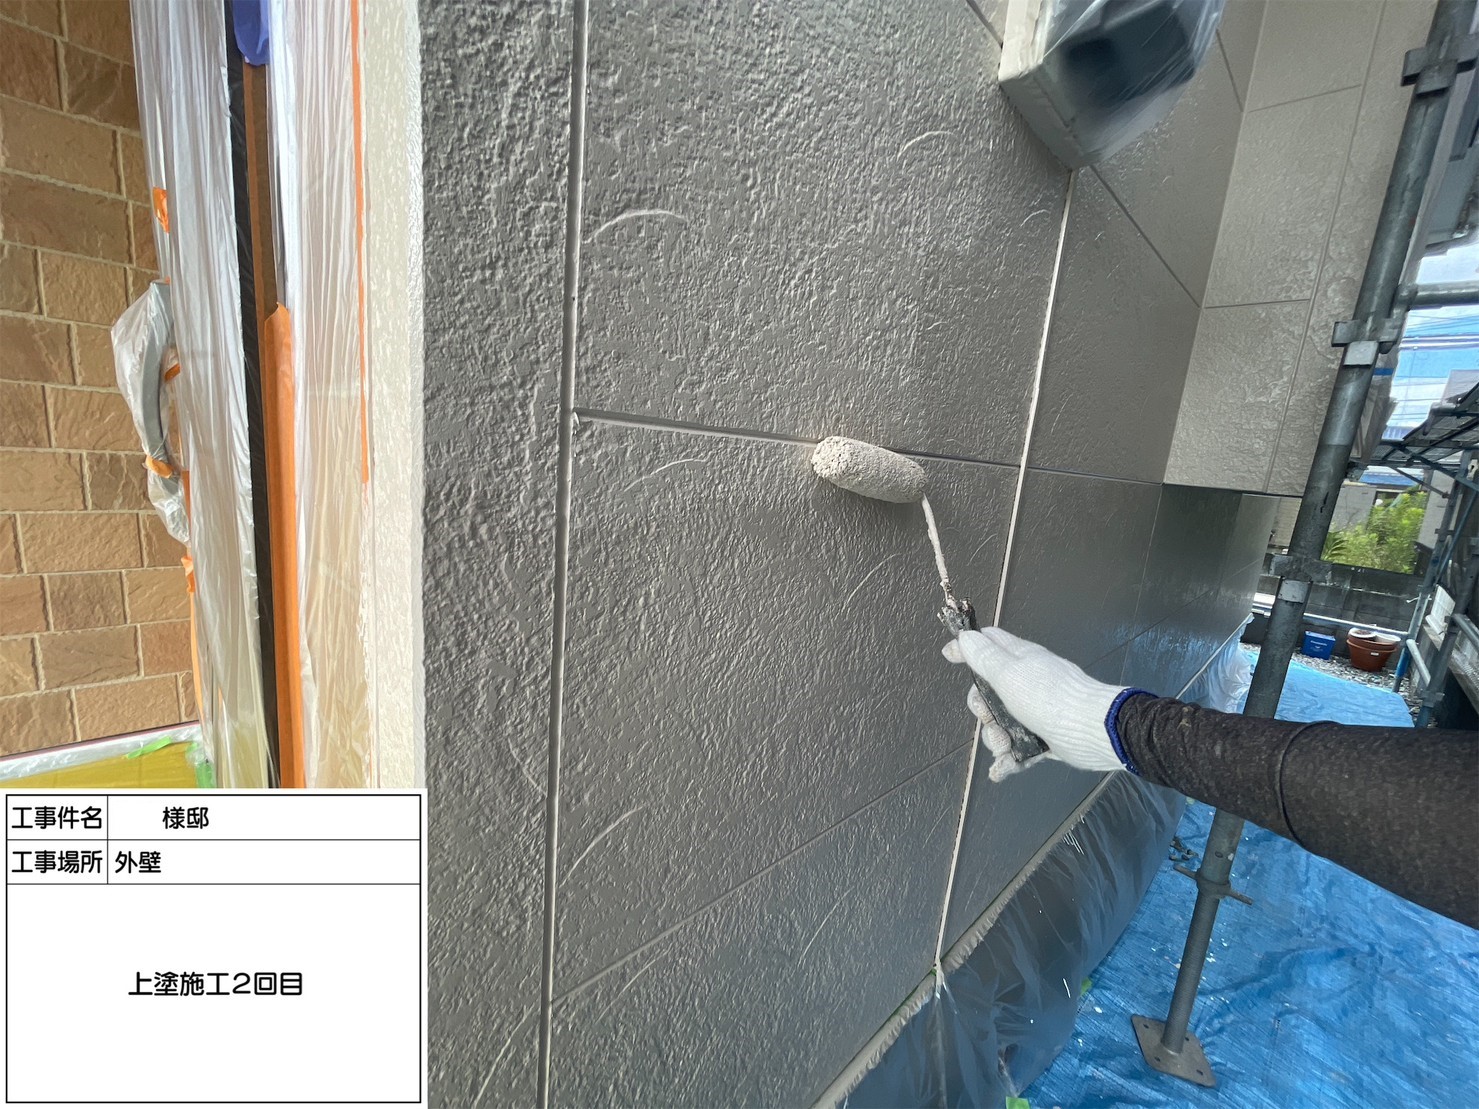 福岡県筑前町東小田のS様邸で経年劣化によりチョーキングや色褪せが発生していた外壁を塗り替えて新築の様に仕上げていきます。7/28着工です。【ホームページより】